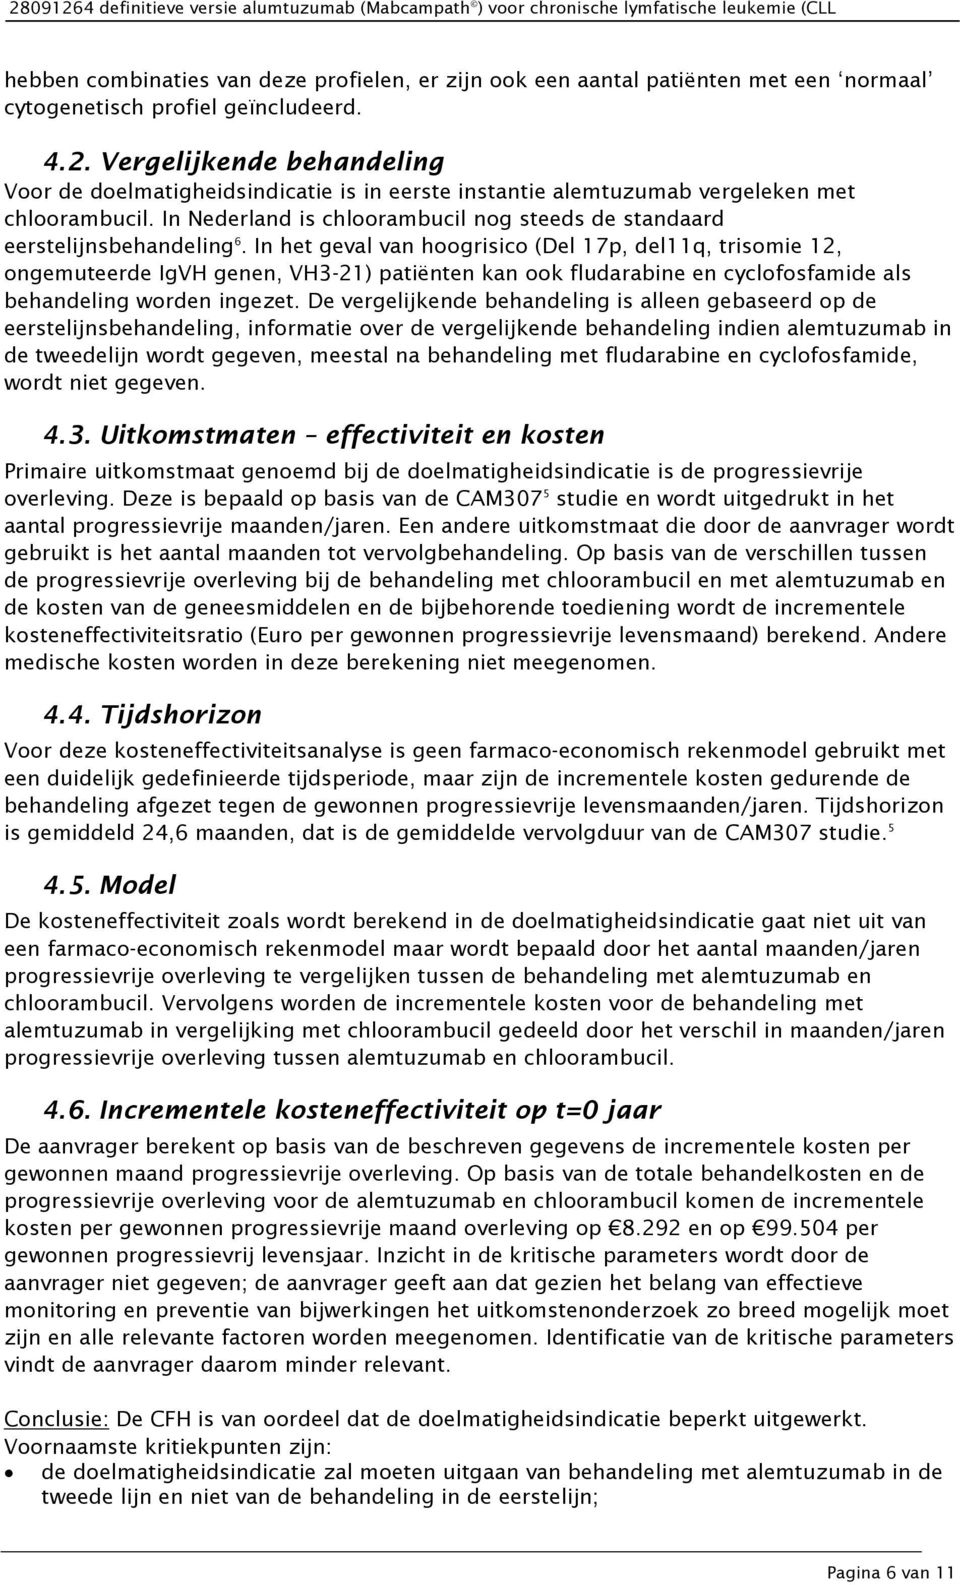 In Nederland is chloorambucil nog steeds de standaard eerstelijnsbehandeling 6.